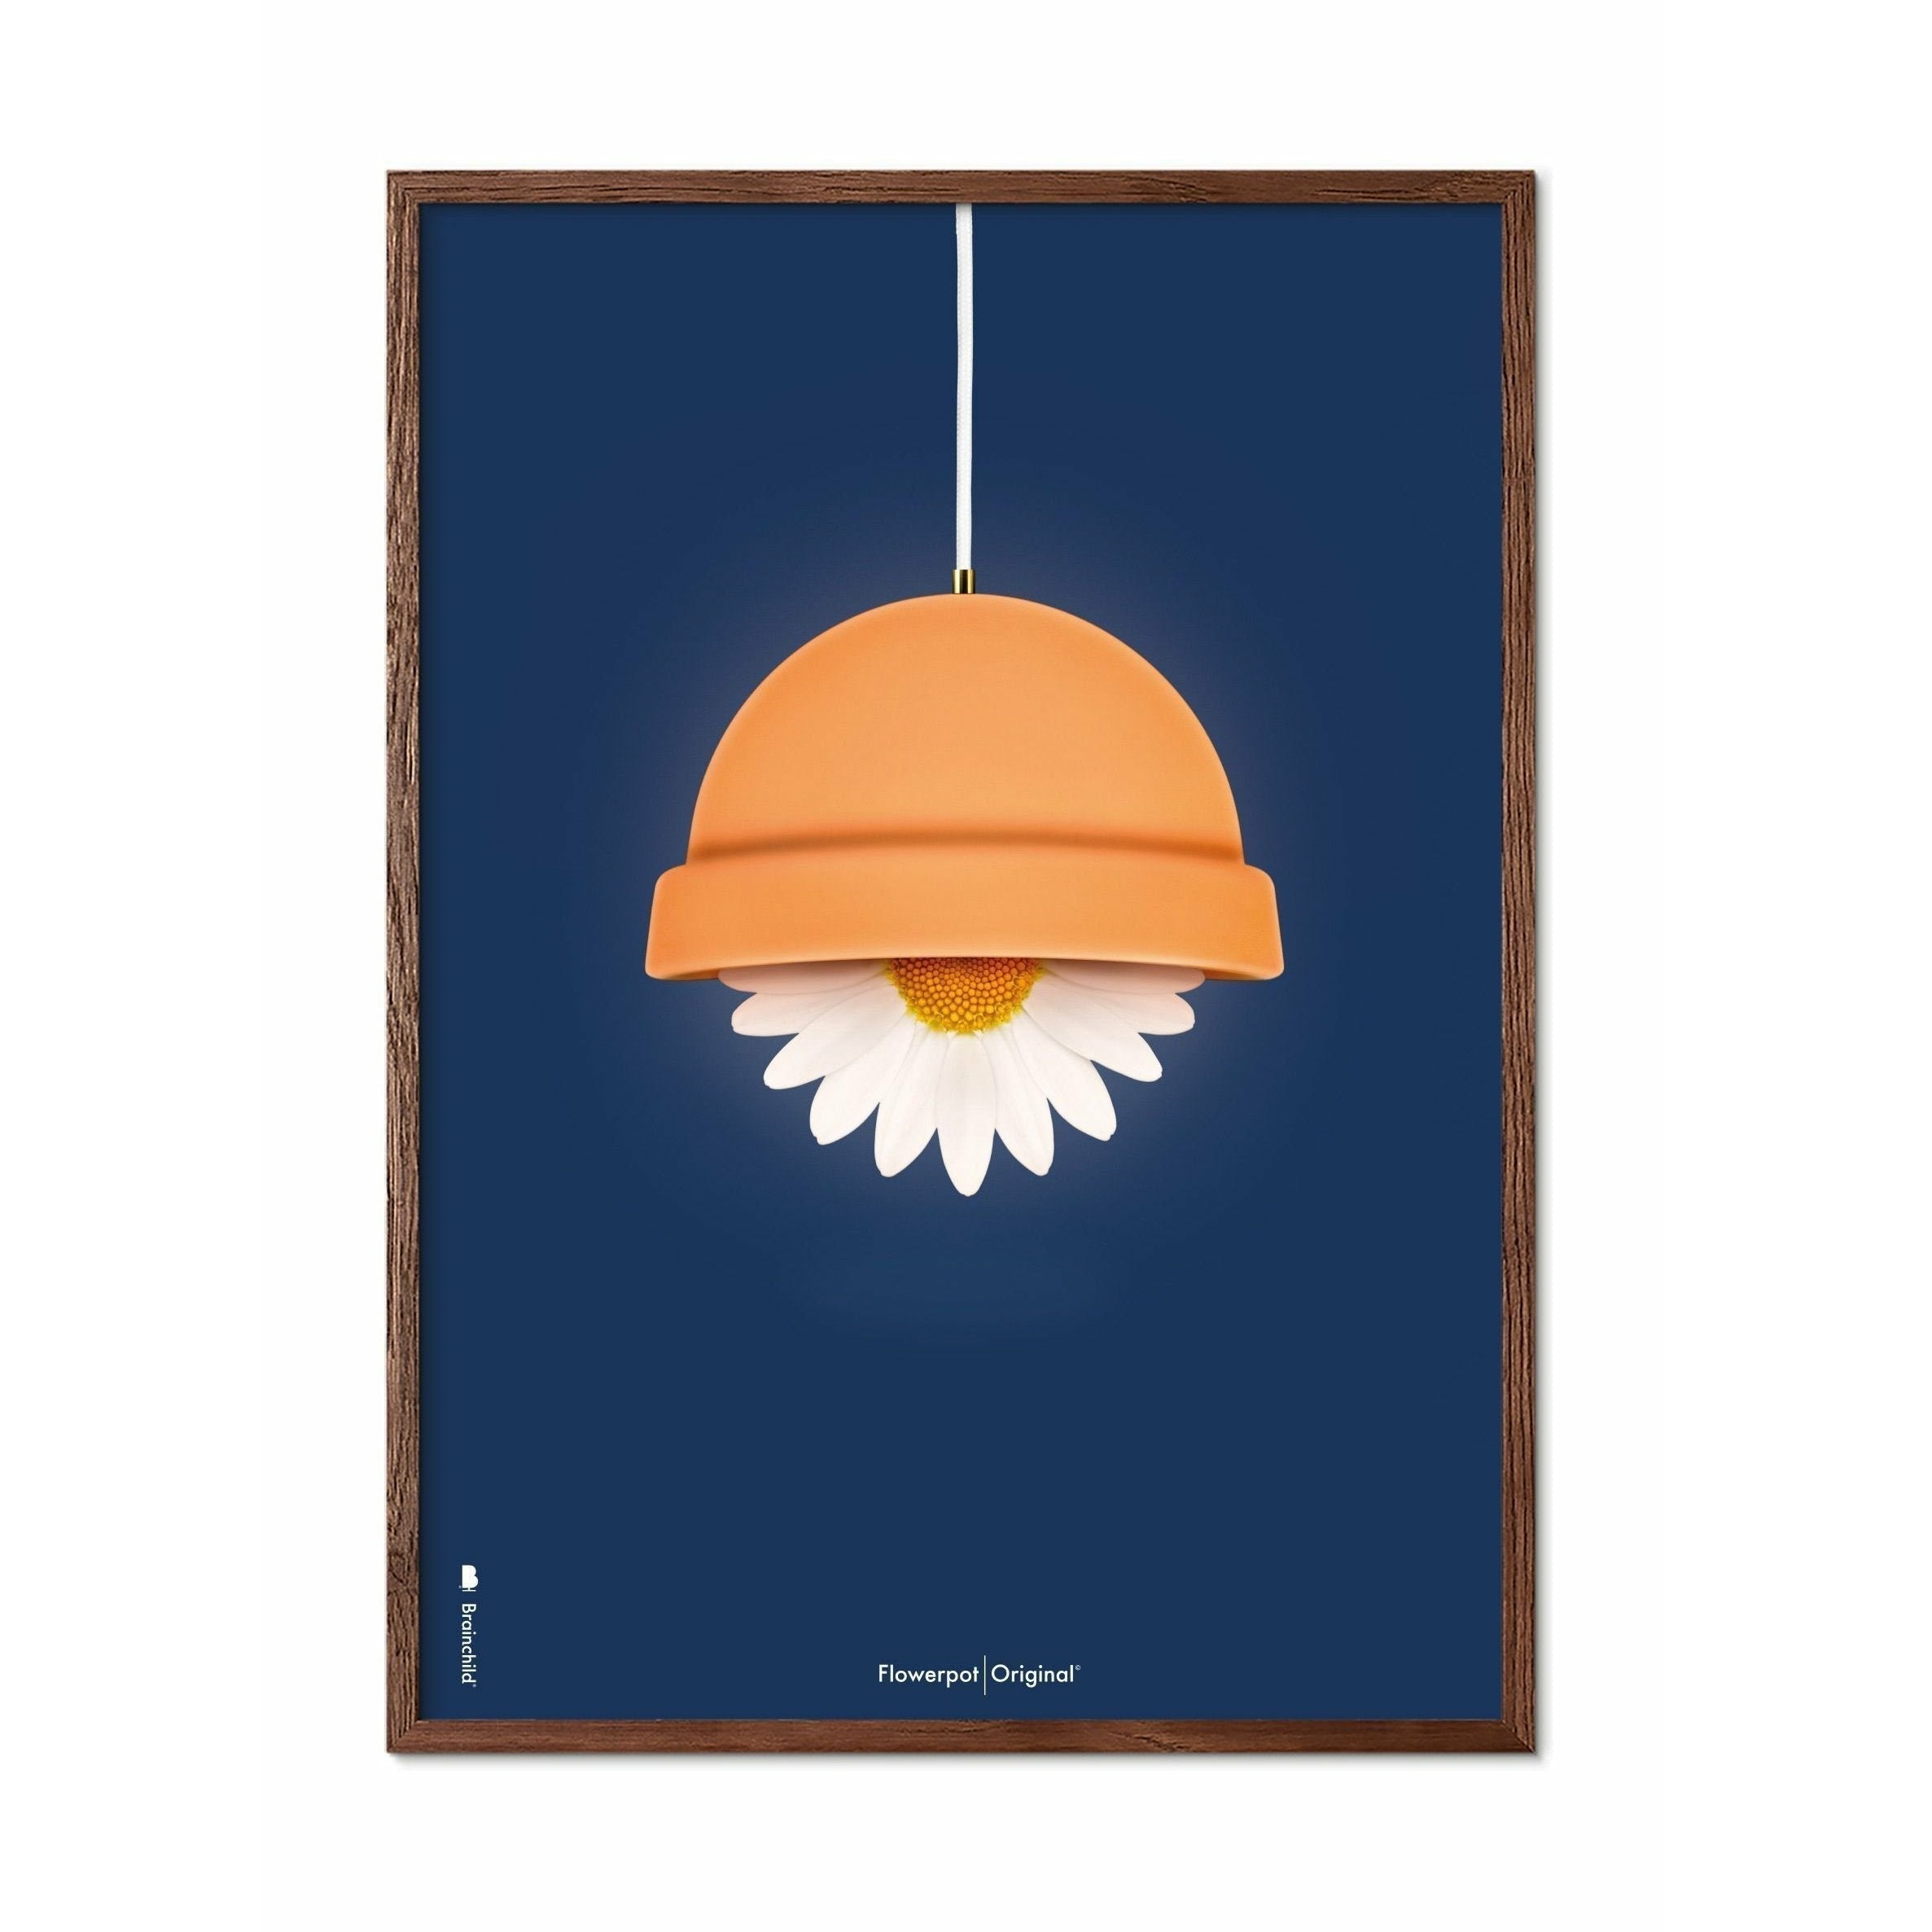 Klasický plakát Brainchild Flowerpot, tmavý dřevěný rám A5, tmavě modré pozadí